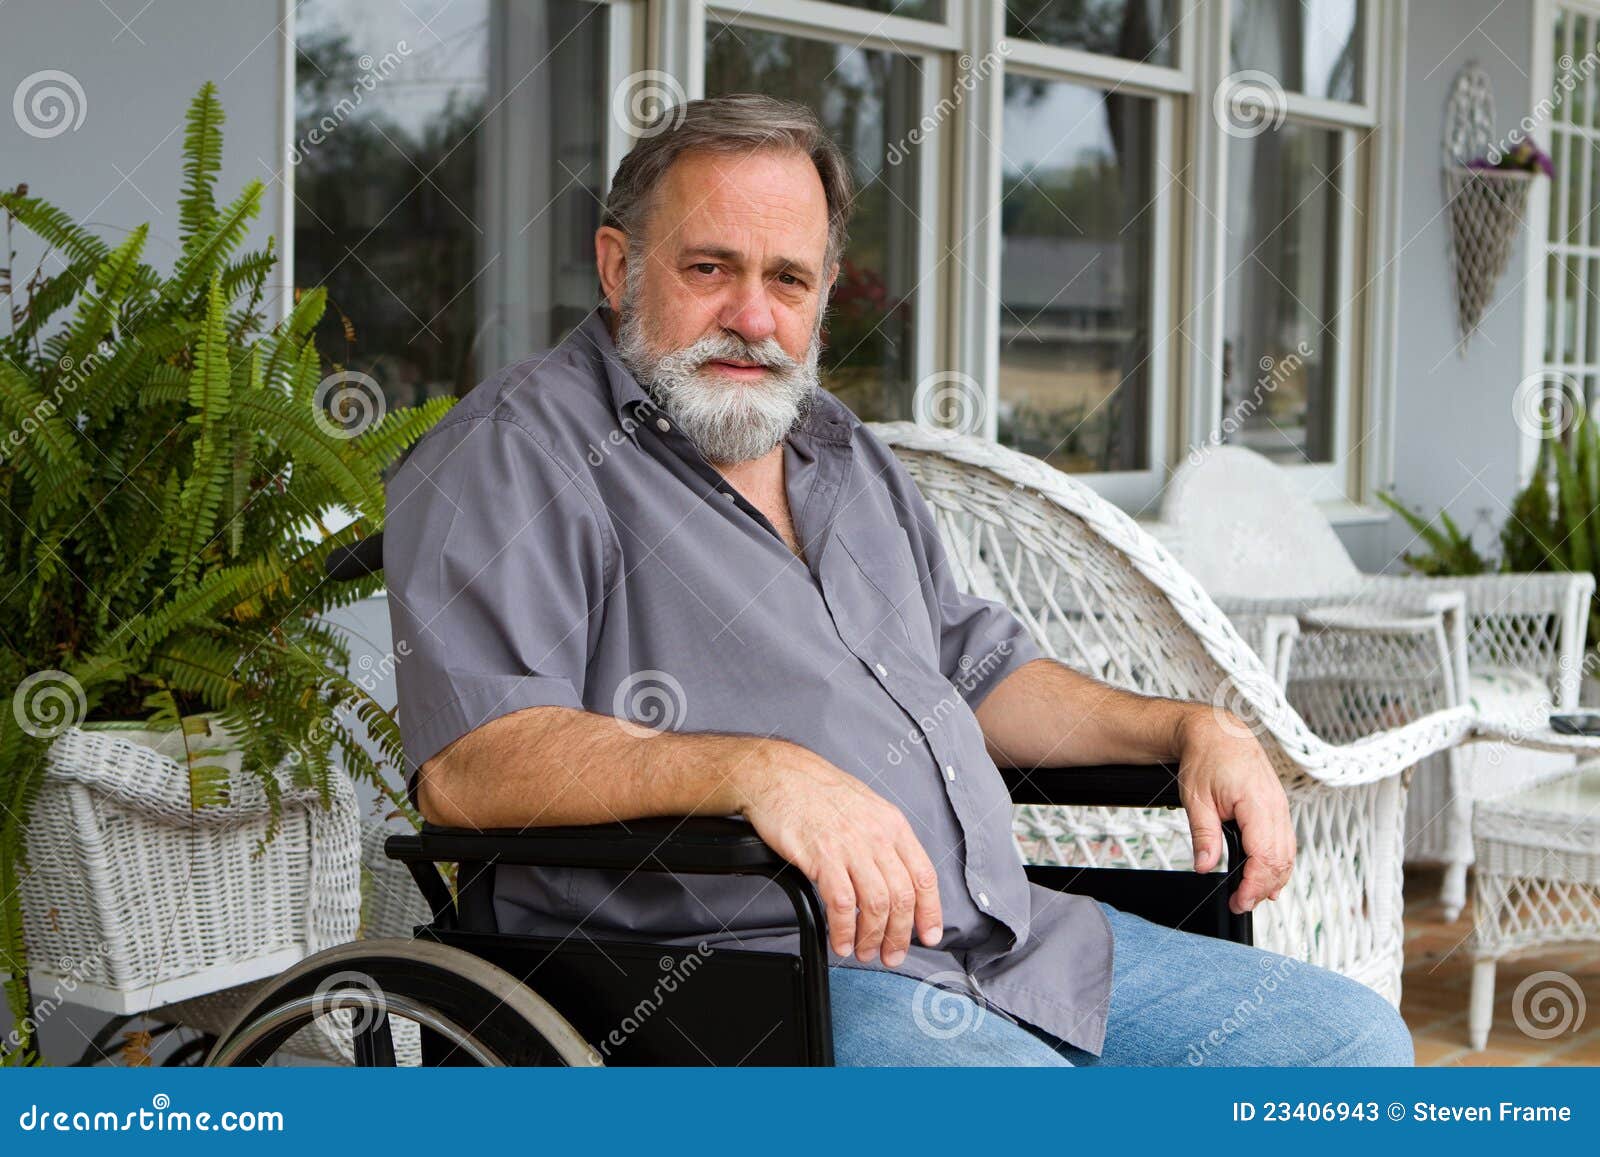 paraplegic man